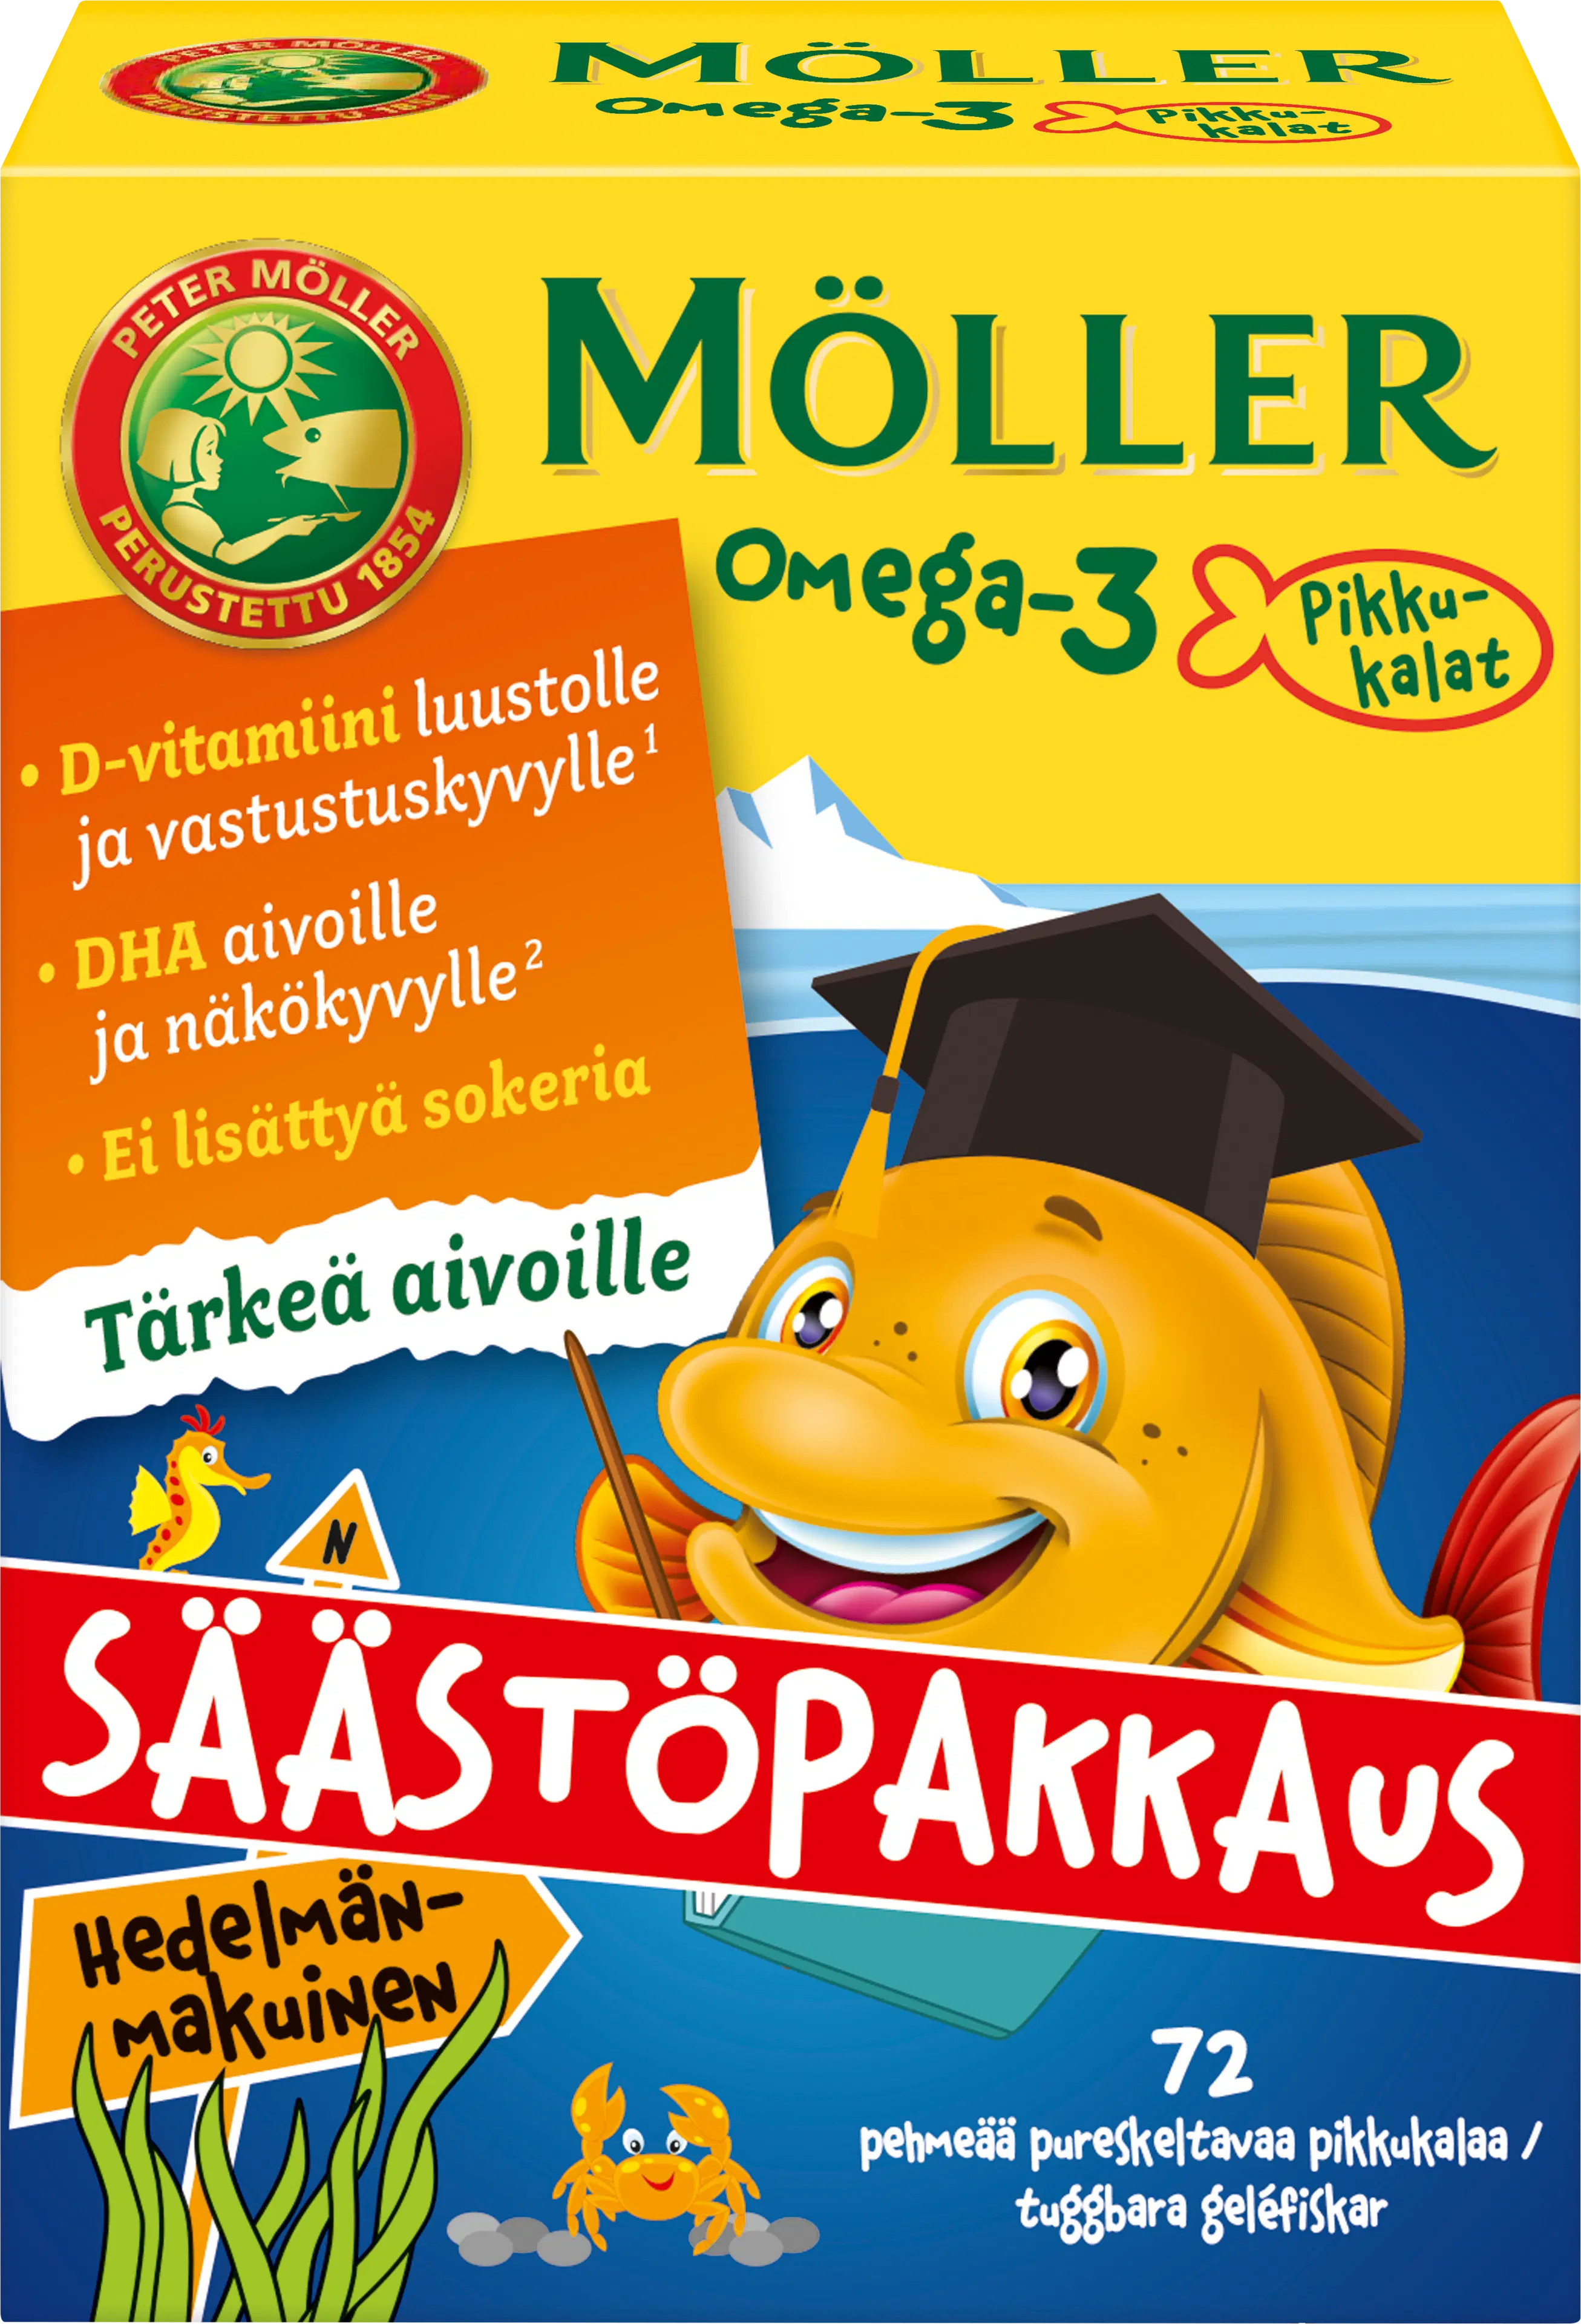 Möller Omega-3 Pikkukalat säästöpakkaus hedelmänmakuinen pehmeä pureskeltava 72kpl